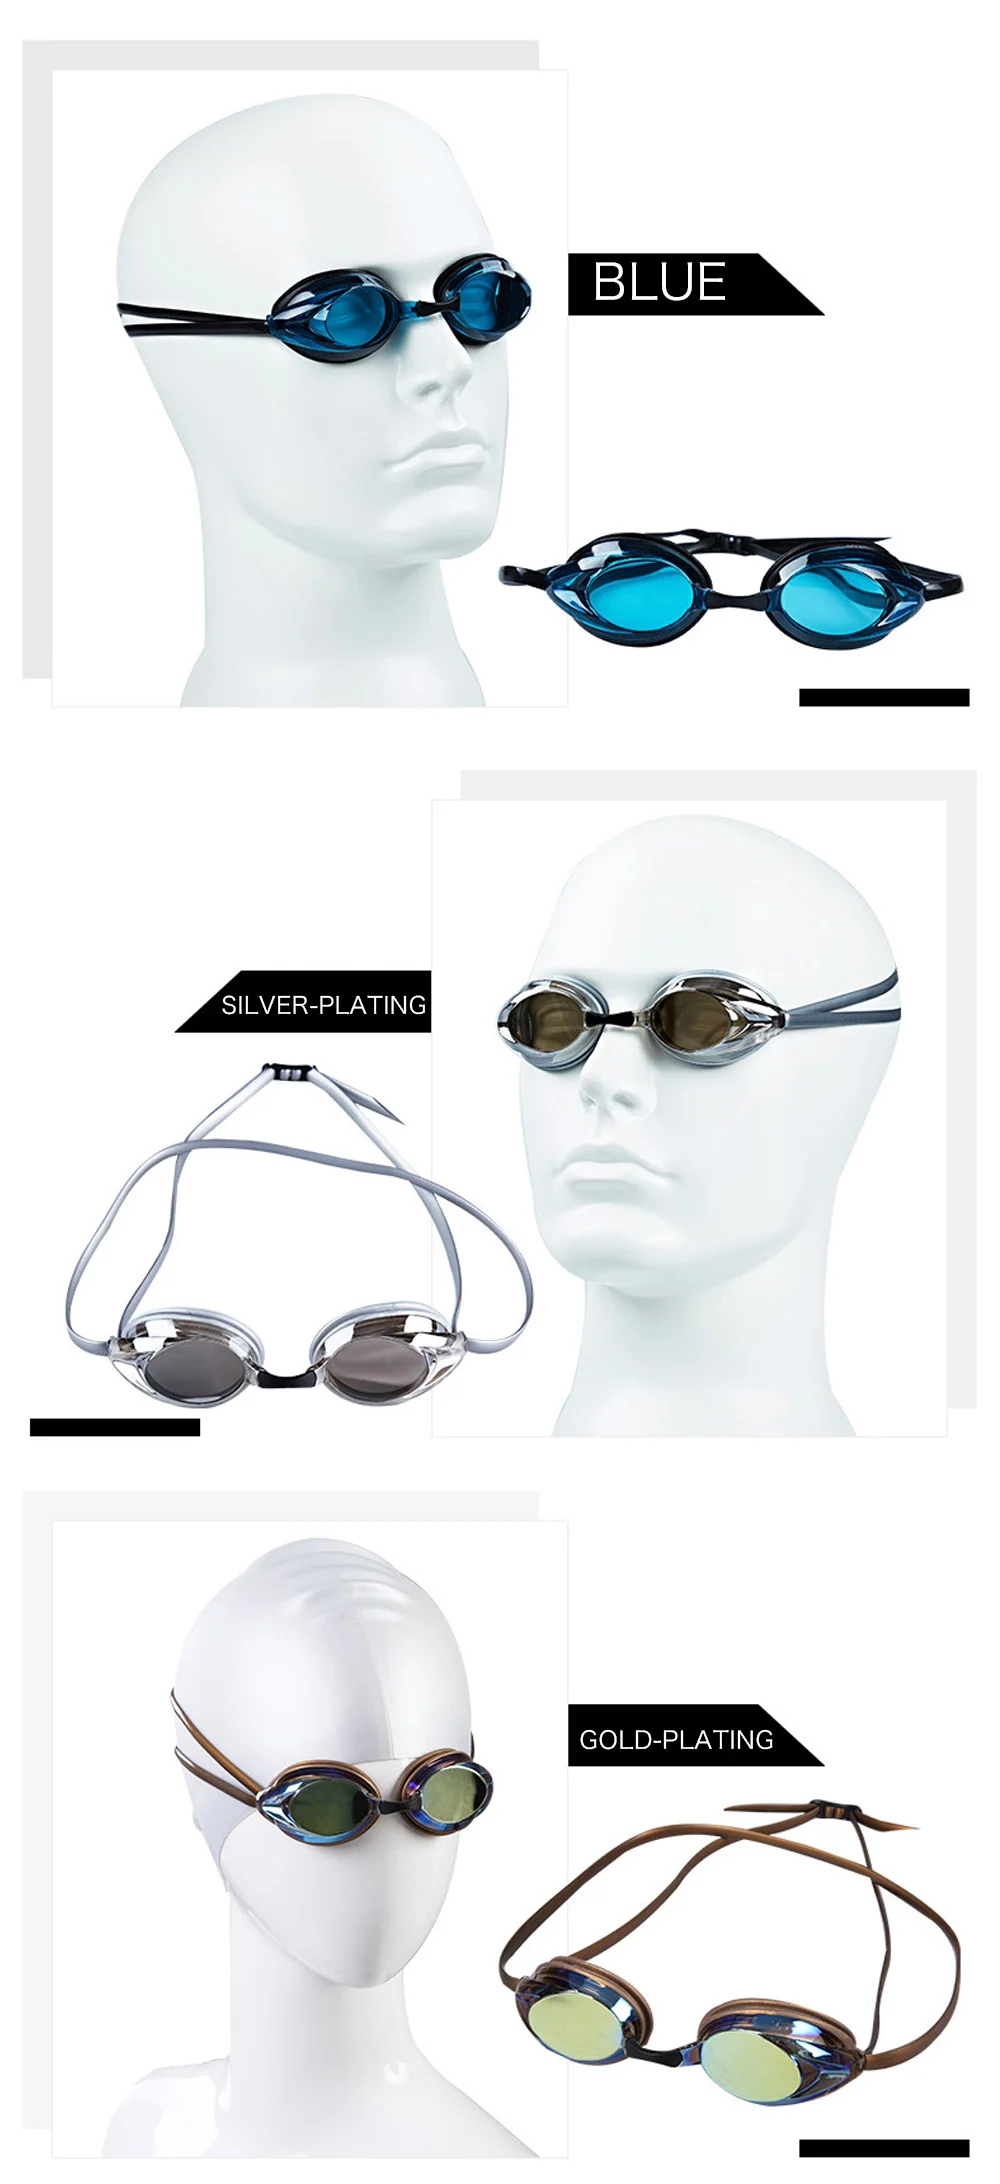 DMAR, профессиональные очки для плавания, анти-туман, УФ очки для плавания с затычкой для ушей для мужчин и женщин, диоптрийные спортивные очки